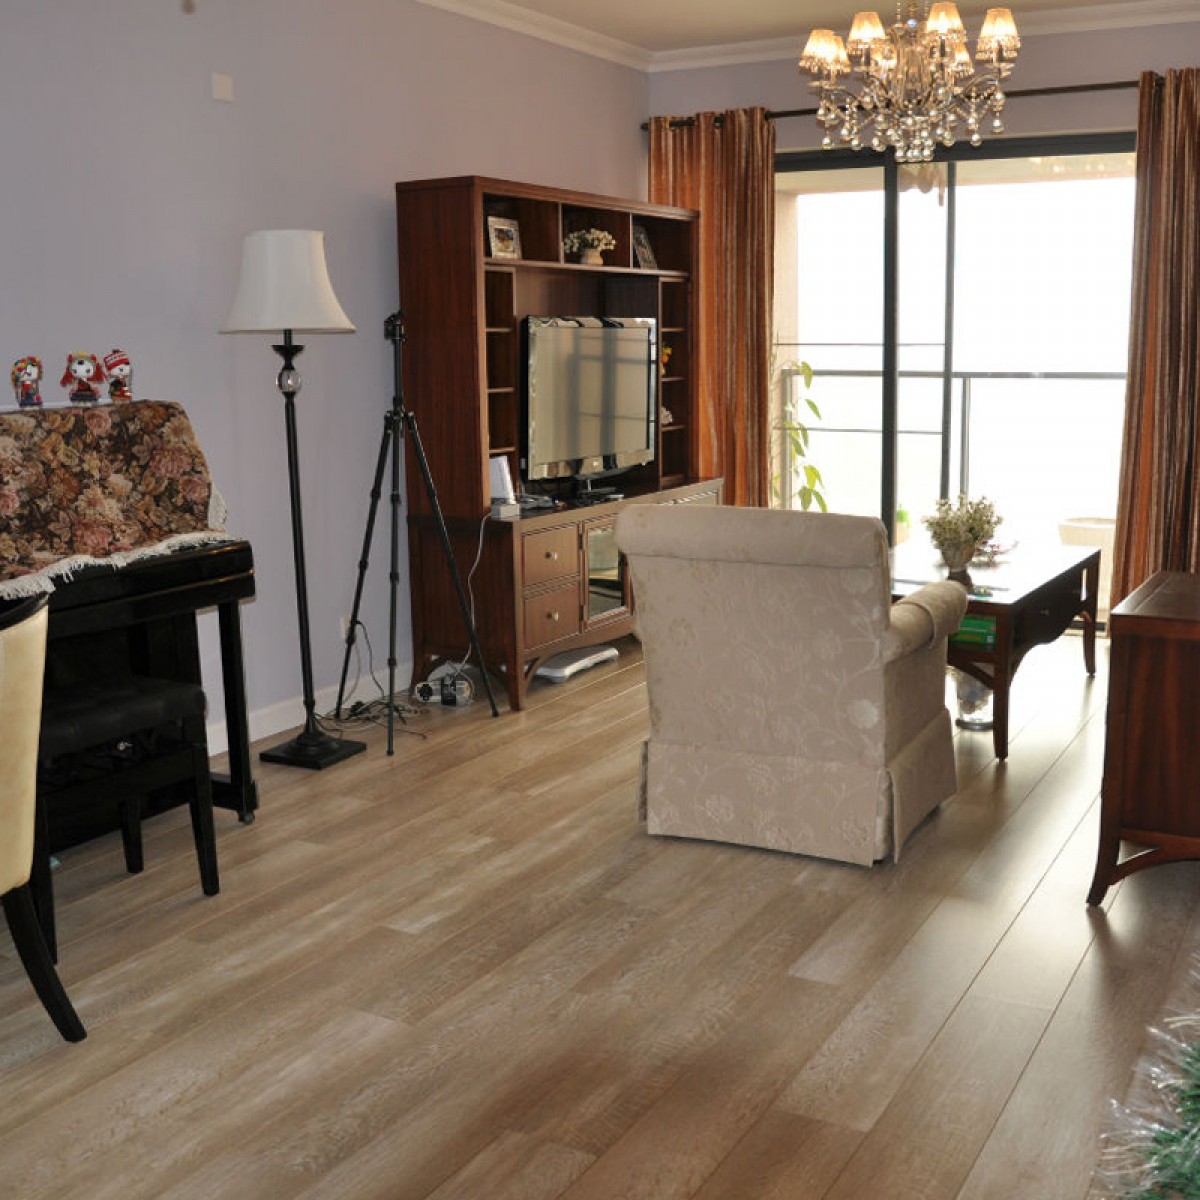 必美宝地雅复合地板比利时原装进口时尚环保家用木地板055